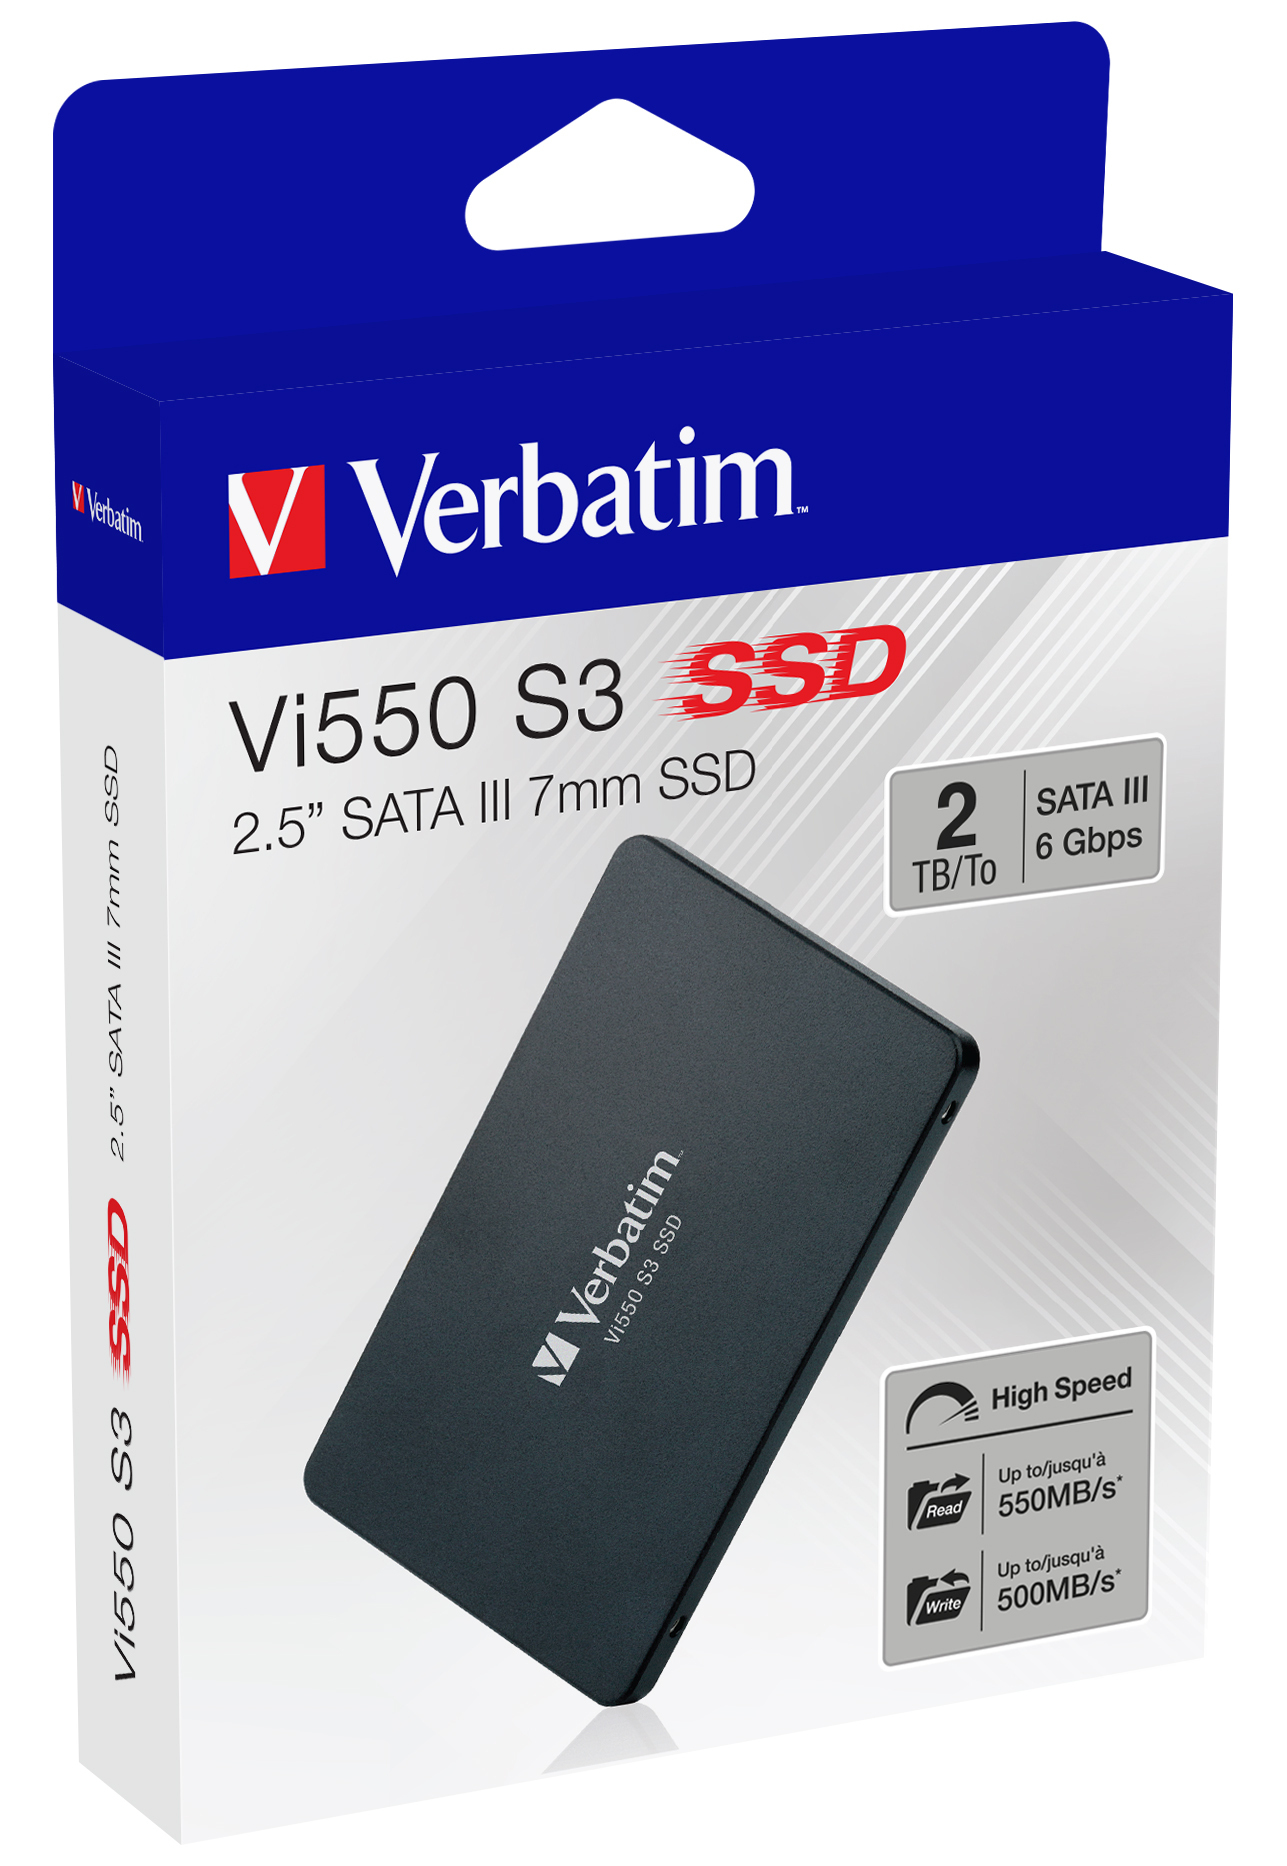 Verbatim Vi550 S3